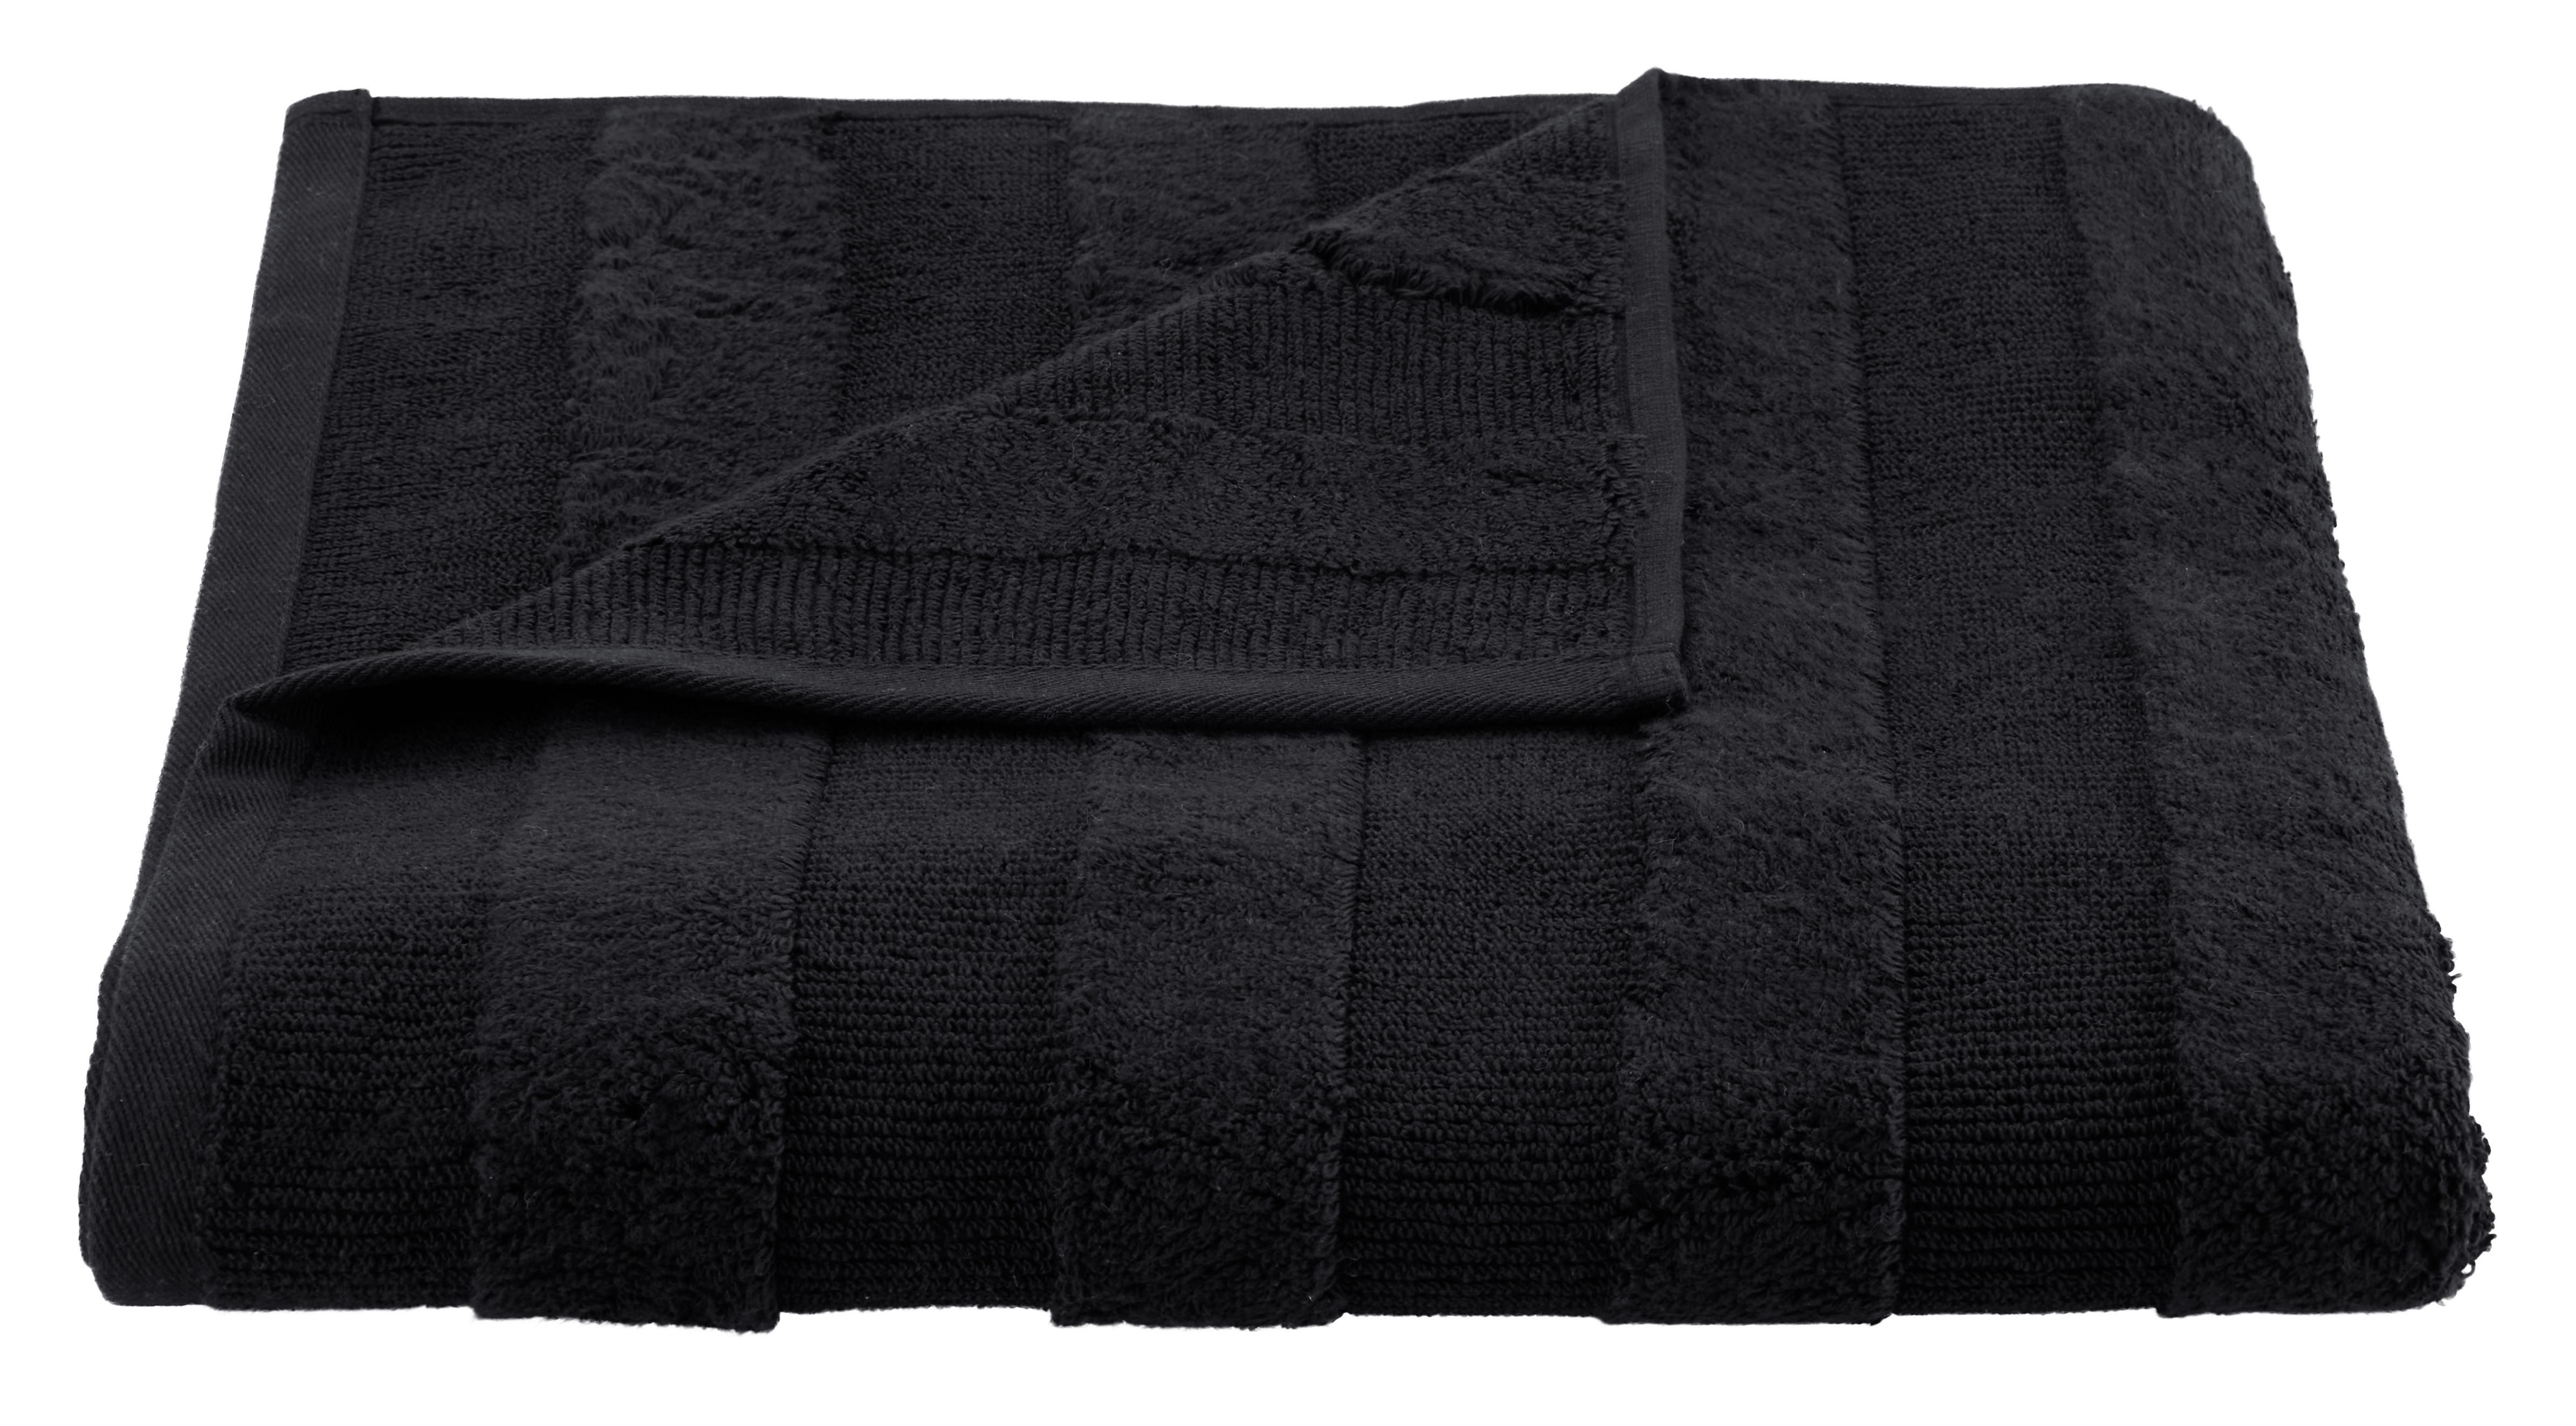 Osuška Do Sprchy Chris, 70/140cm, Černá - černá, textil (70/140cm) - Premium Living